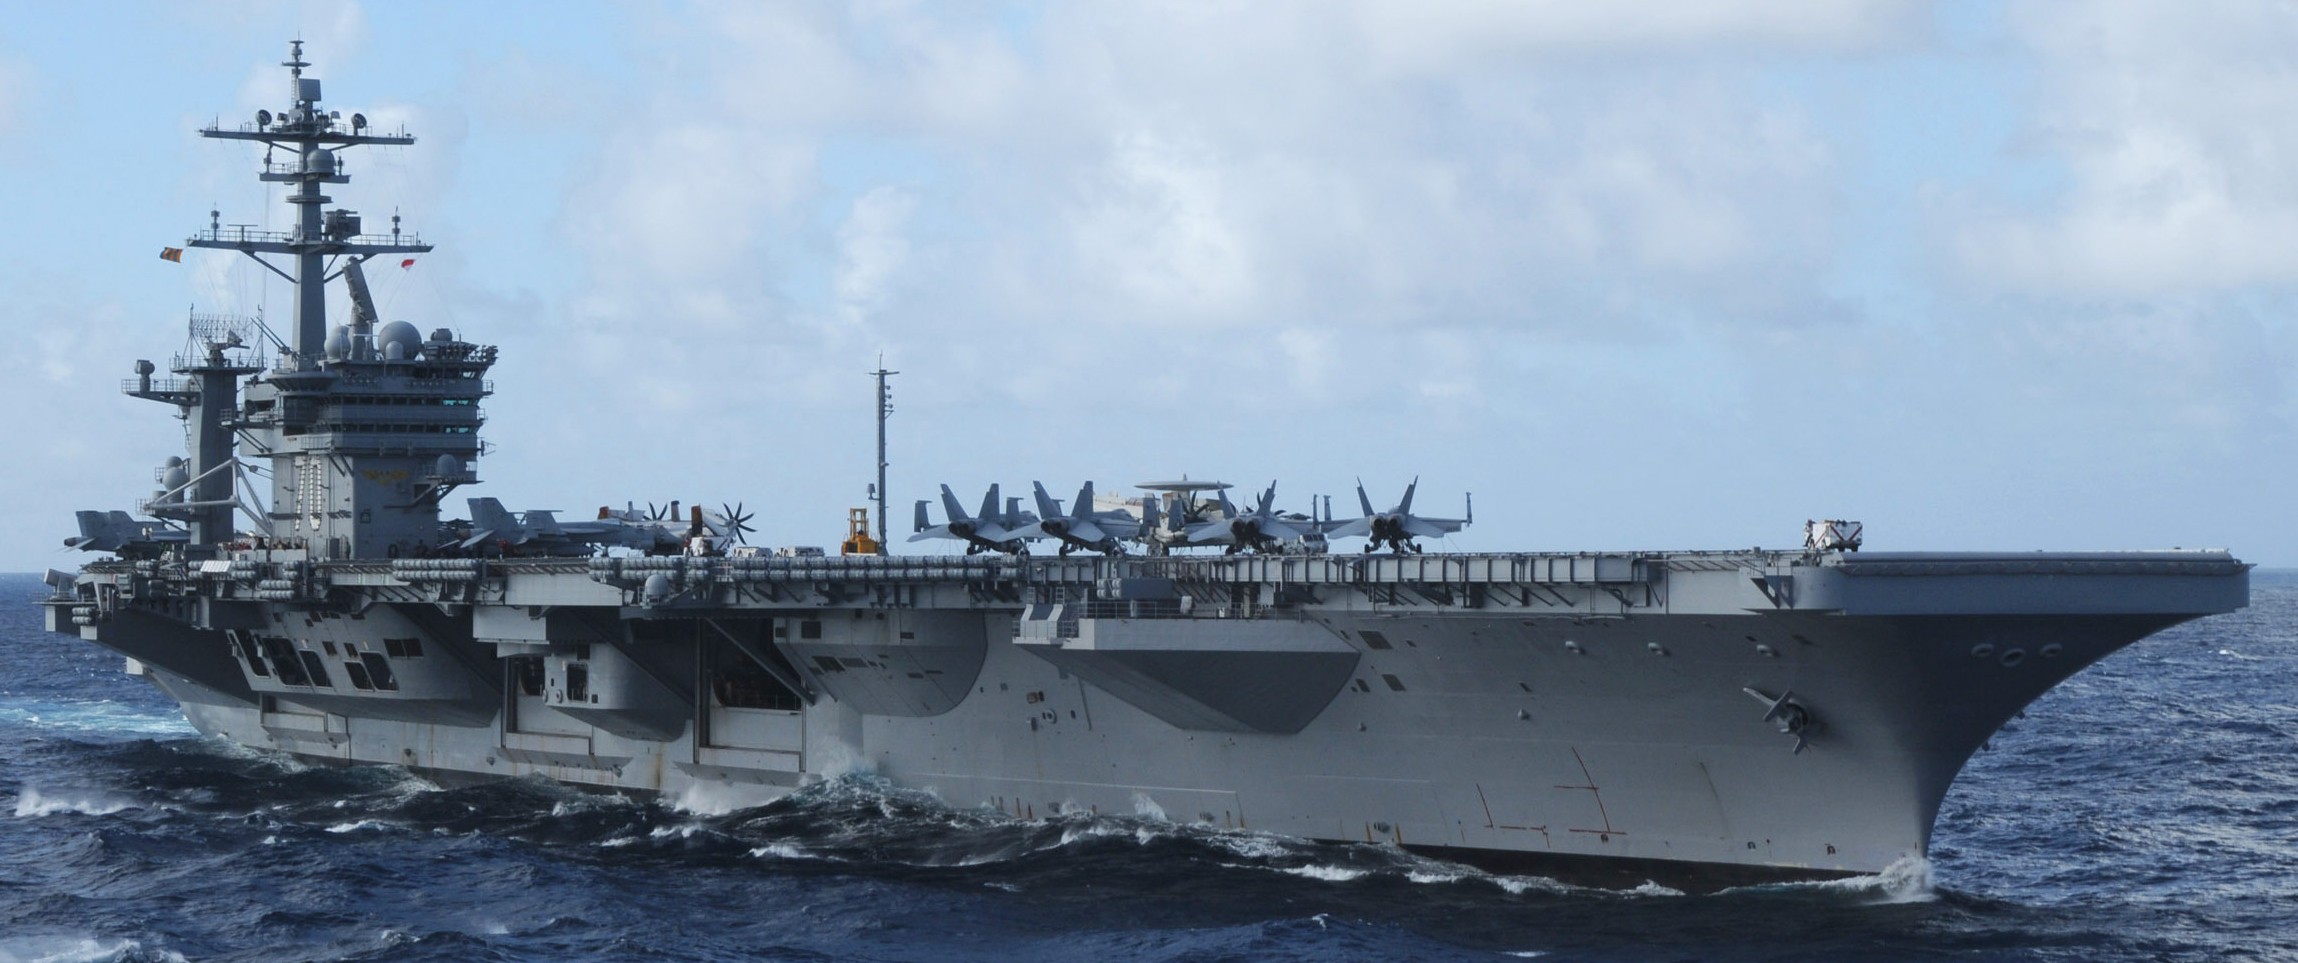 cvn-70 uss carl vinson nimitz class aircraft carrier us navy 134